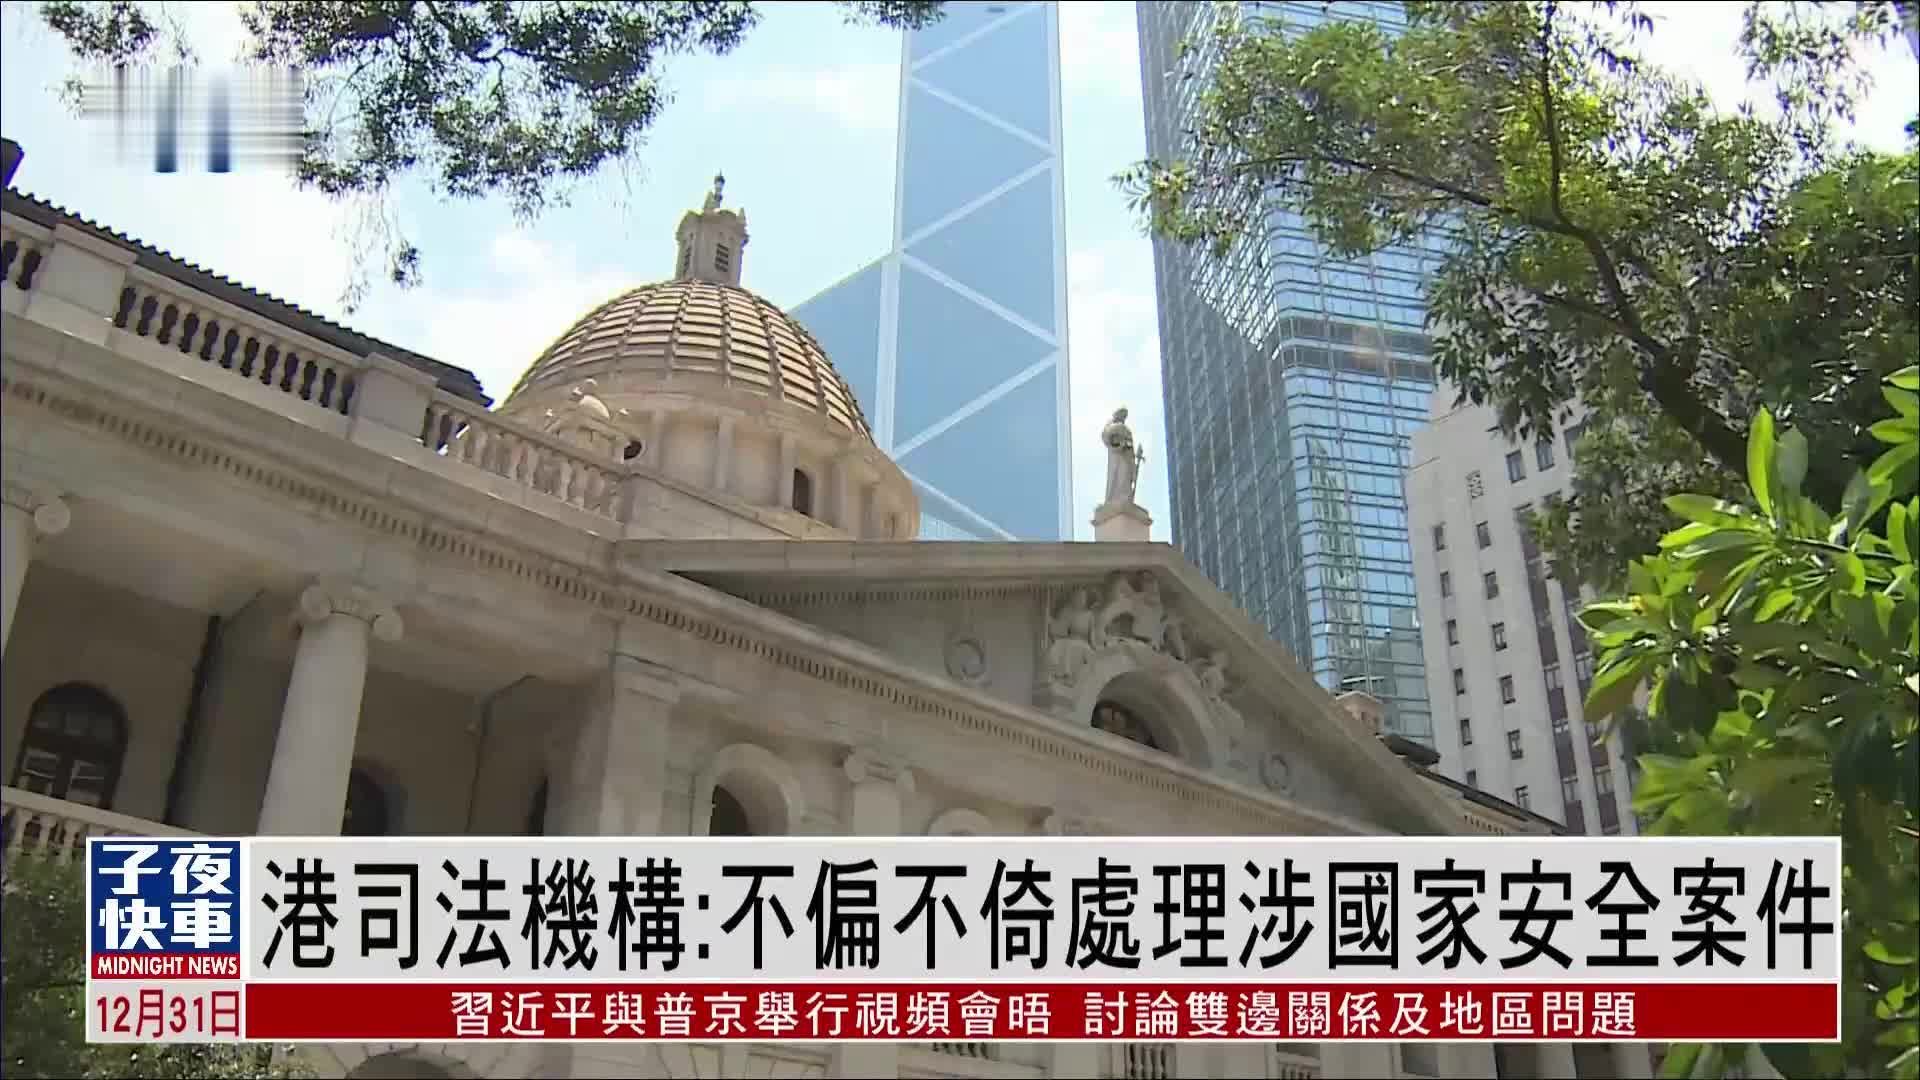 Transparency is key when judging Hong Kong judges - Hong Kong News